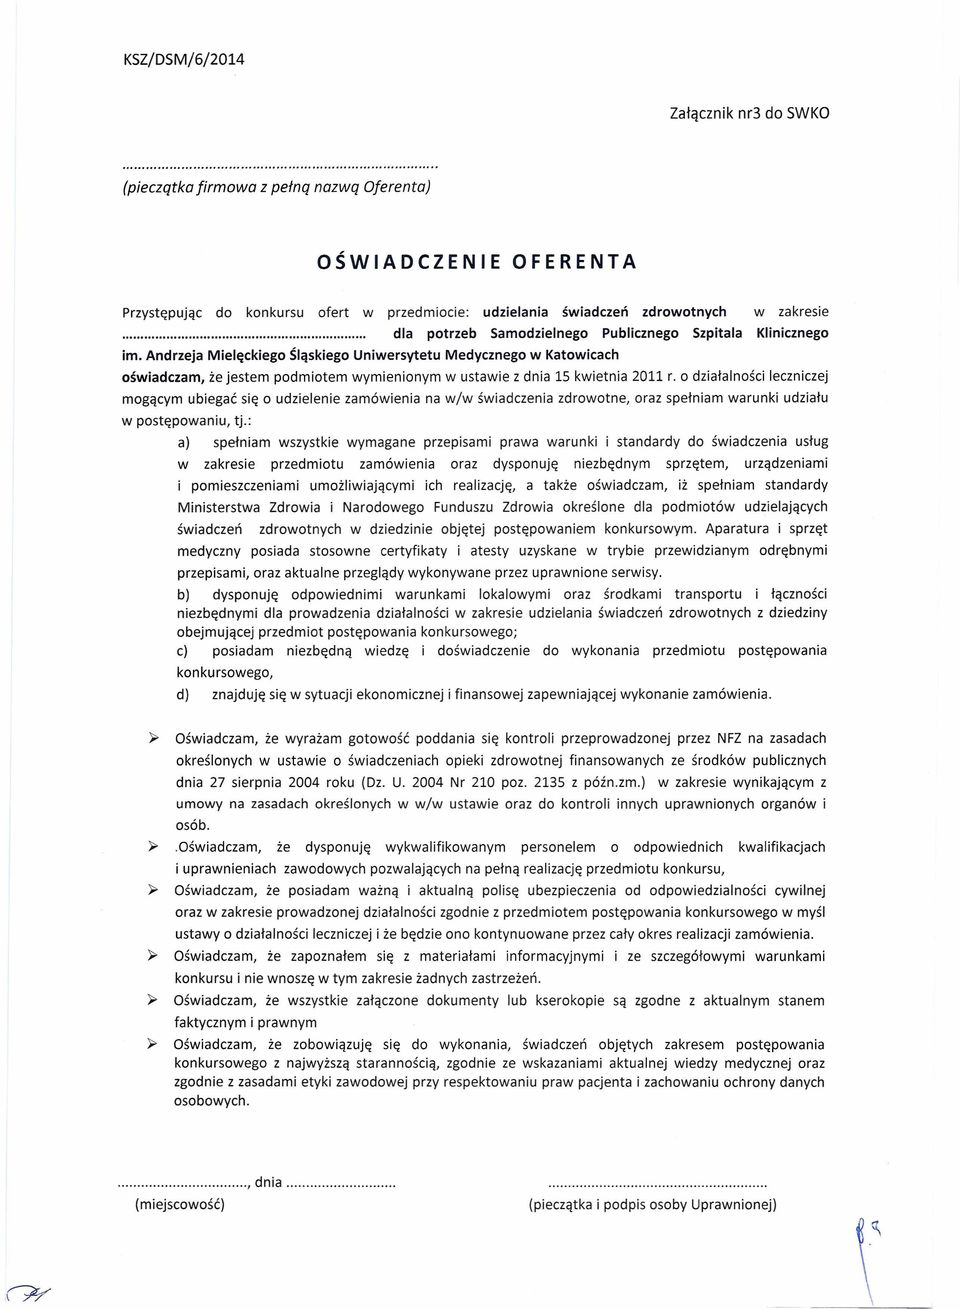 Andrzeja Mielęckiego Śląskiego Uniwersytetu Medycznego w Katowicach oświadczam, że jestem podmiotem wymienionym w ustawie z dnia 15 kwietnia 2011 r.